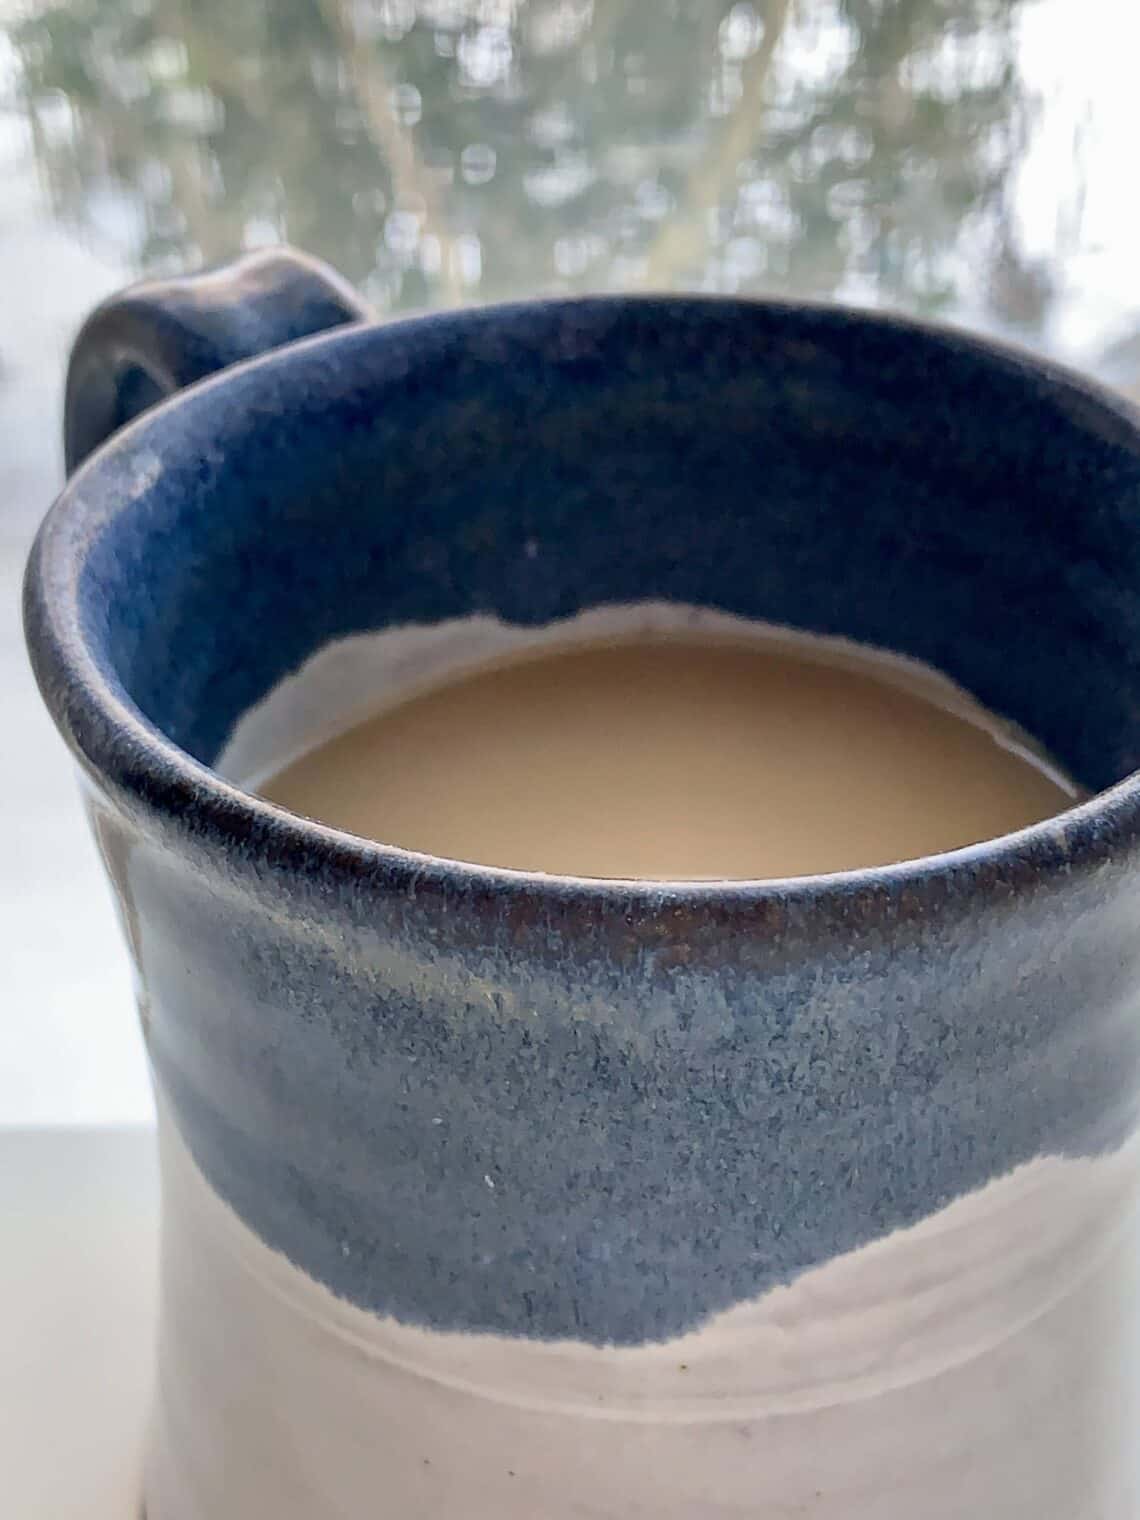 London Fog, Earl Grey Tea Latte in a blue and white mug